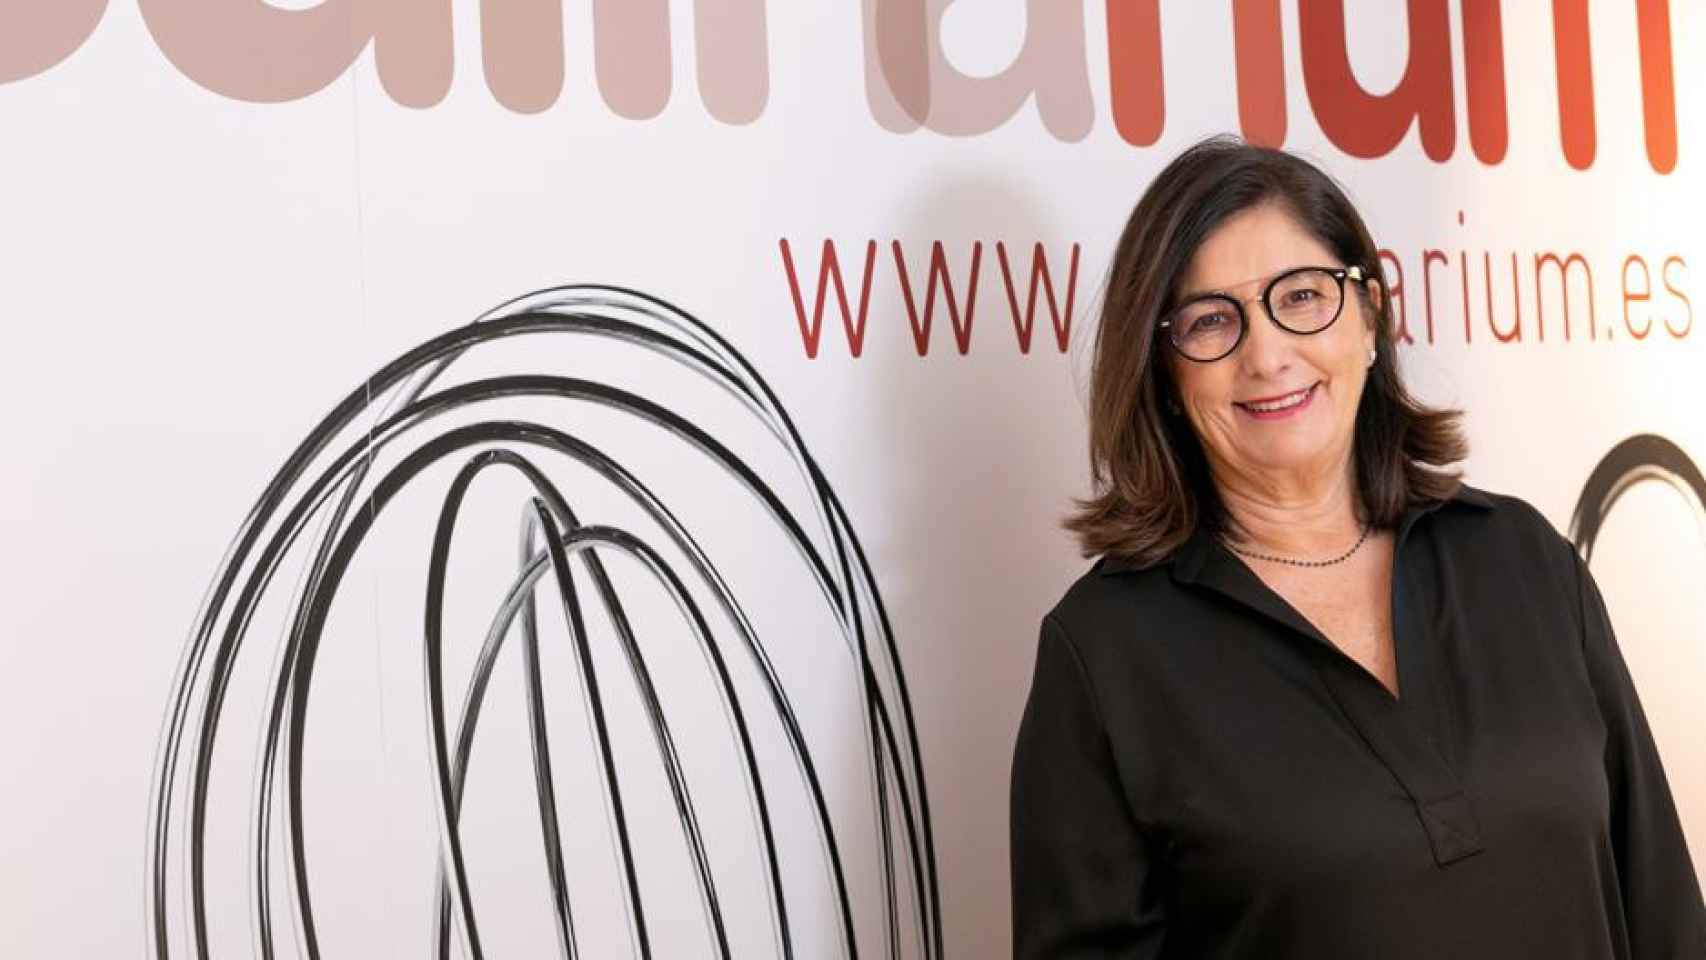 Montse Robinat, CEO de Culinarium